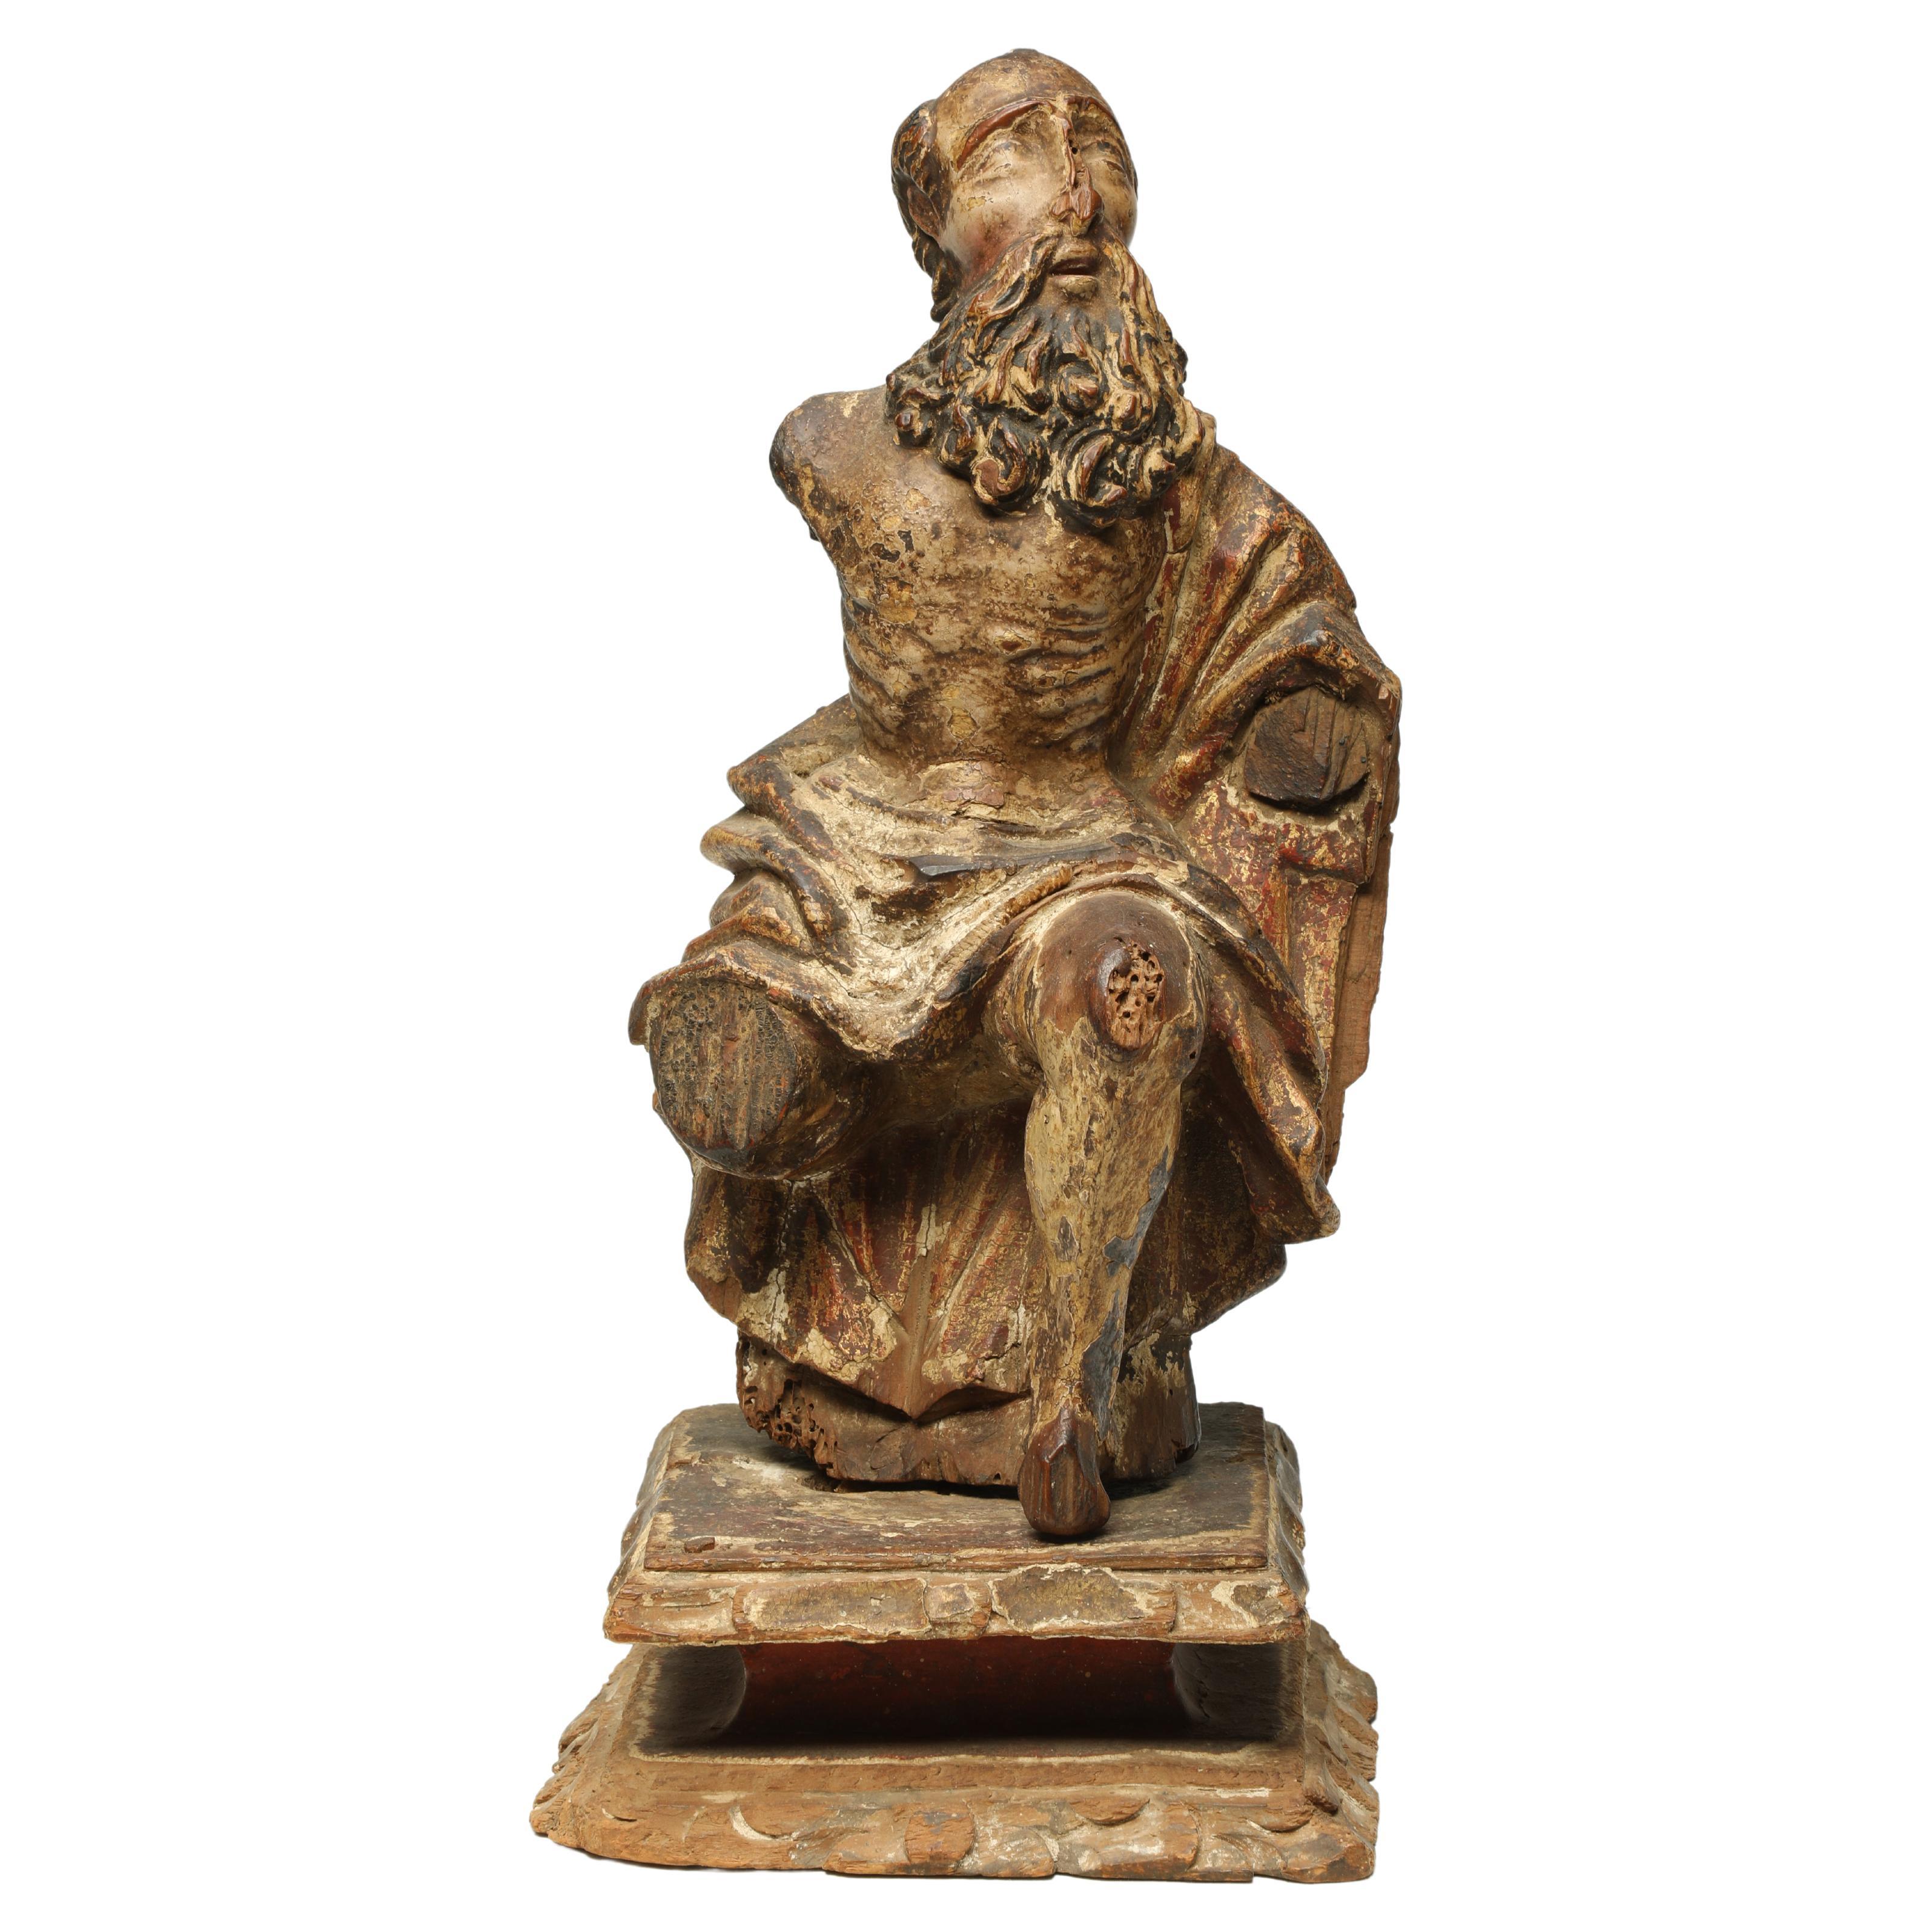 Antikes italienisches sitzende Heiligenfigurenfragment aus Holz mit Beard aus dem 17. bis 18. Jahrhundert